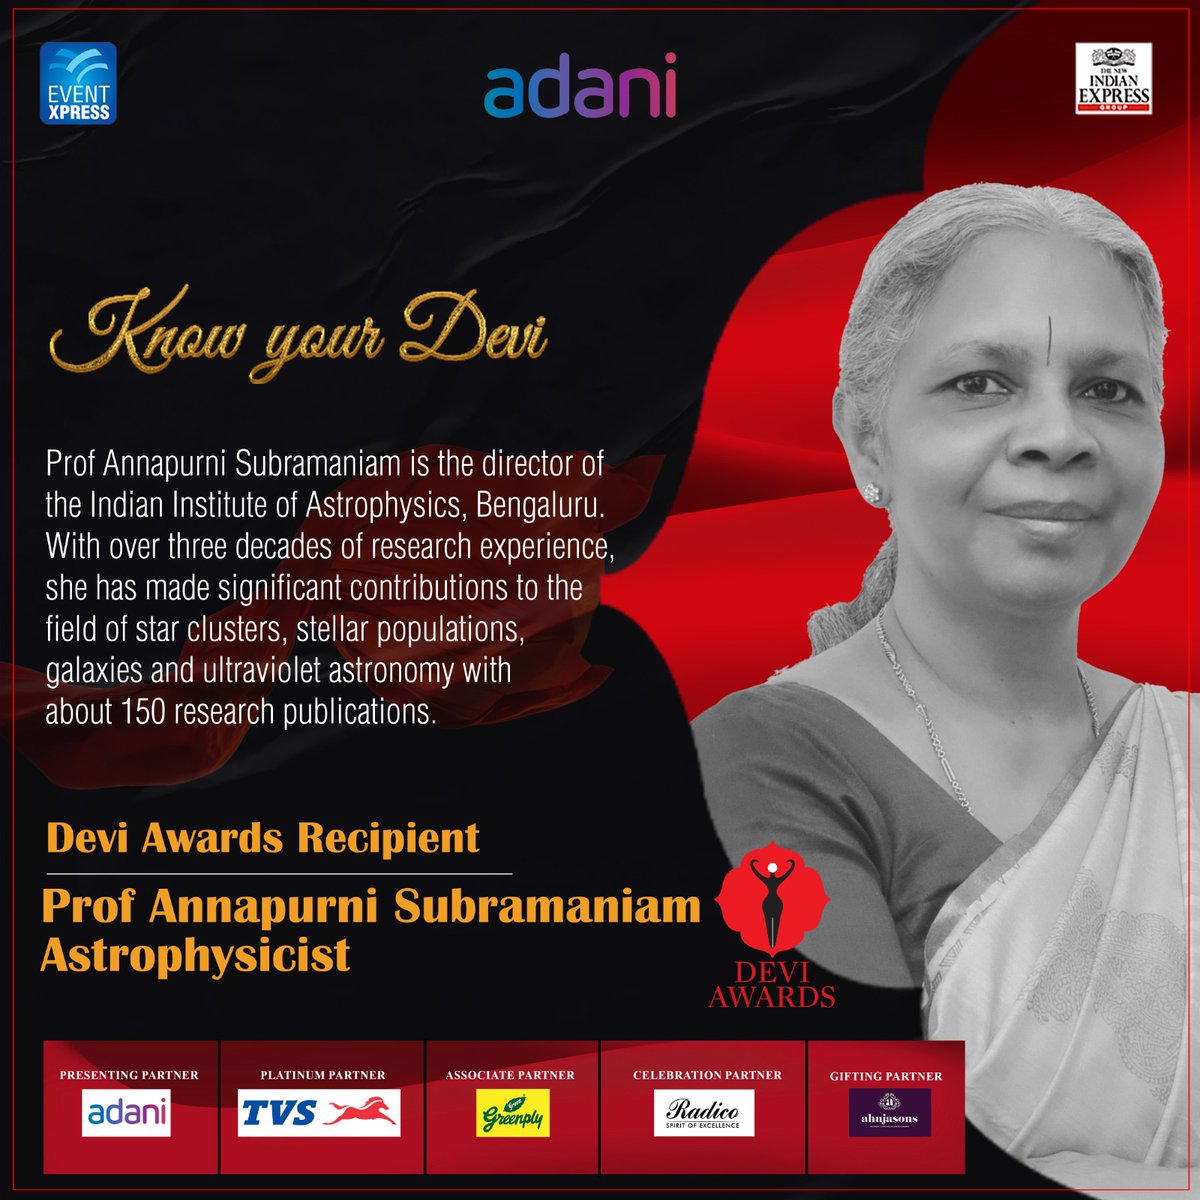 #KnowYourDevi: Professor Annapurni Subramaniam, Astrophysicist

#DeviAwards #DeviAwardsChennai

@NewIndianXpress @Eventxpress @PrabhuChawla @AdaniOnline @sudhirsrinivasn